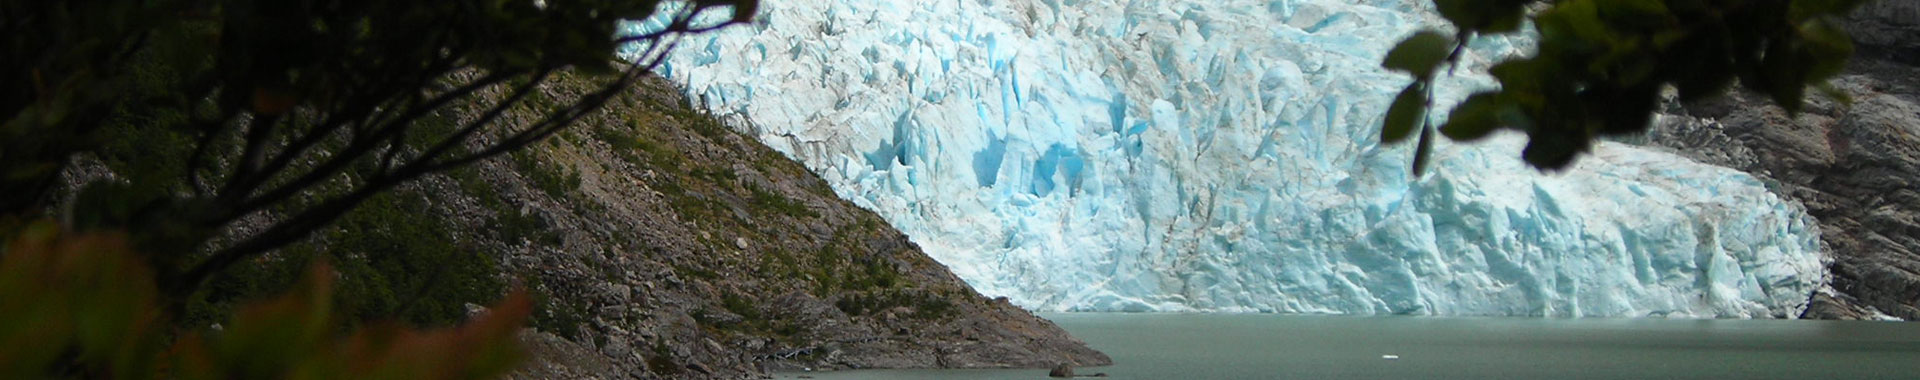 Chile - Patagonia - Paseos - Glaciares